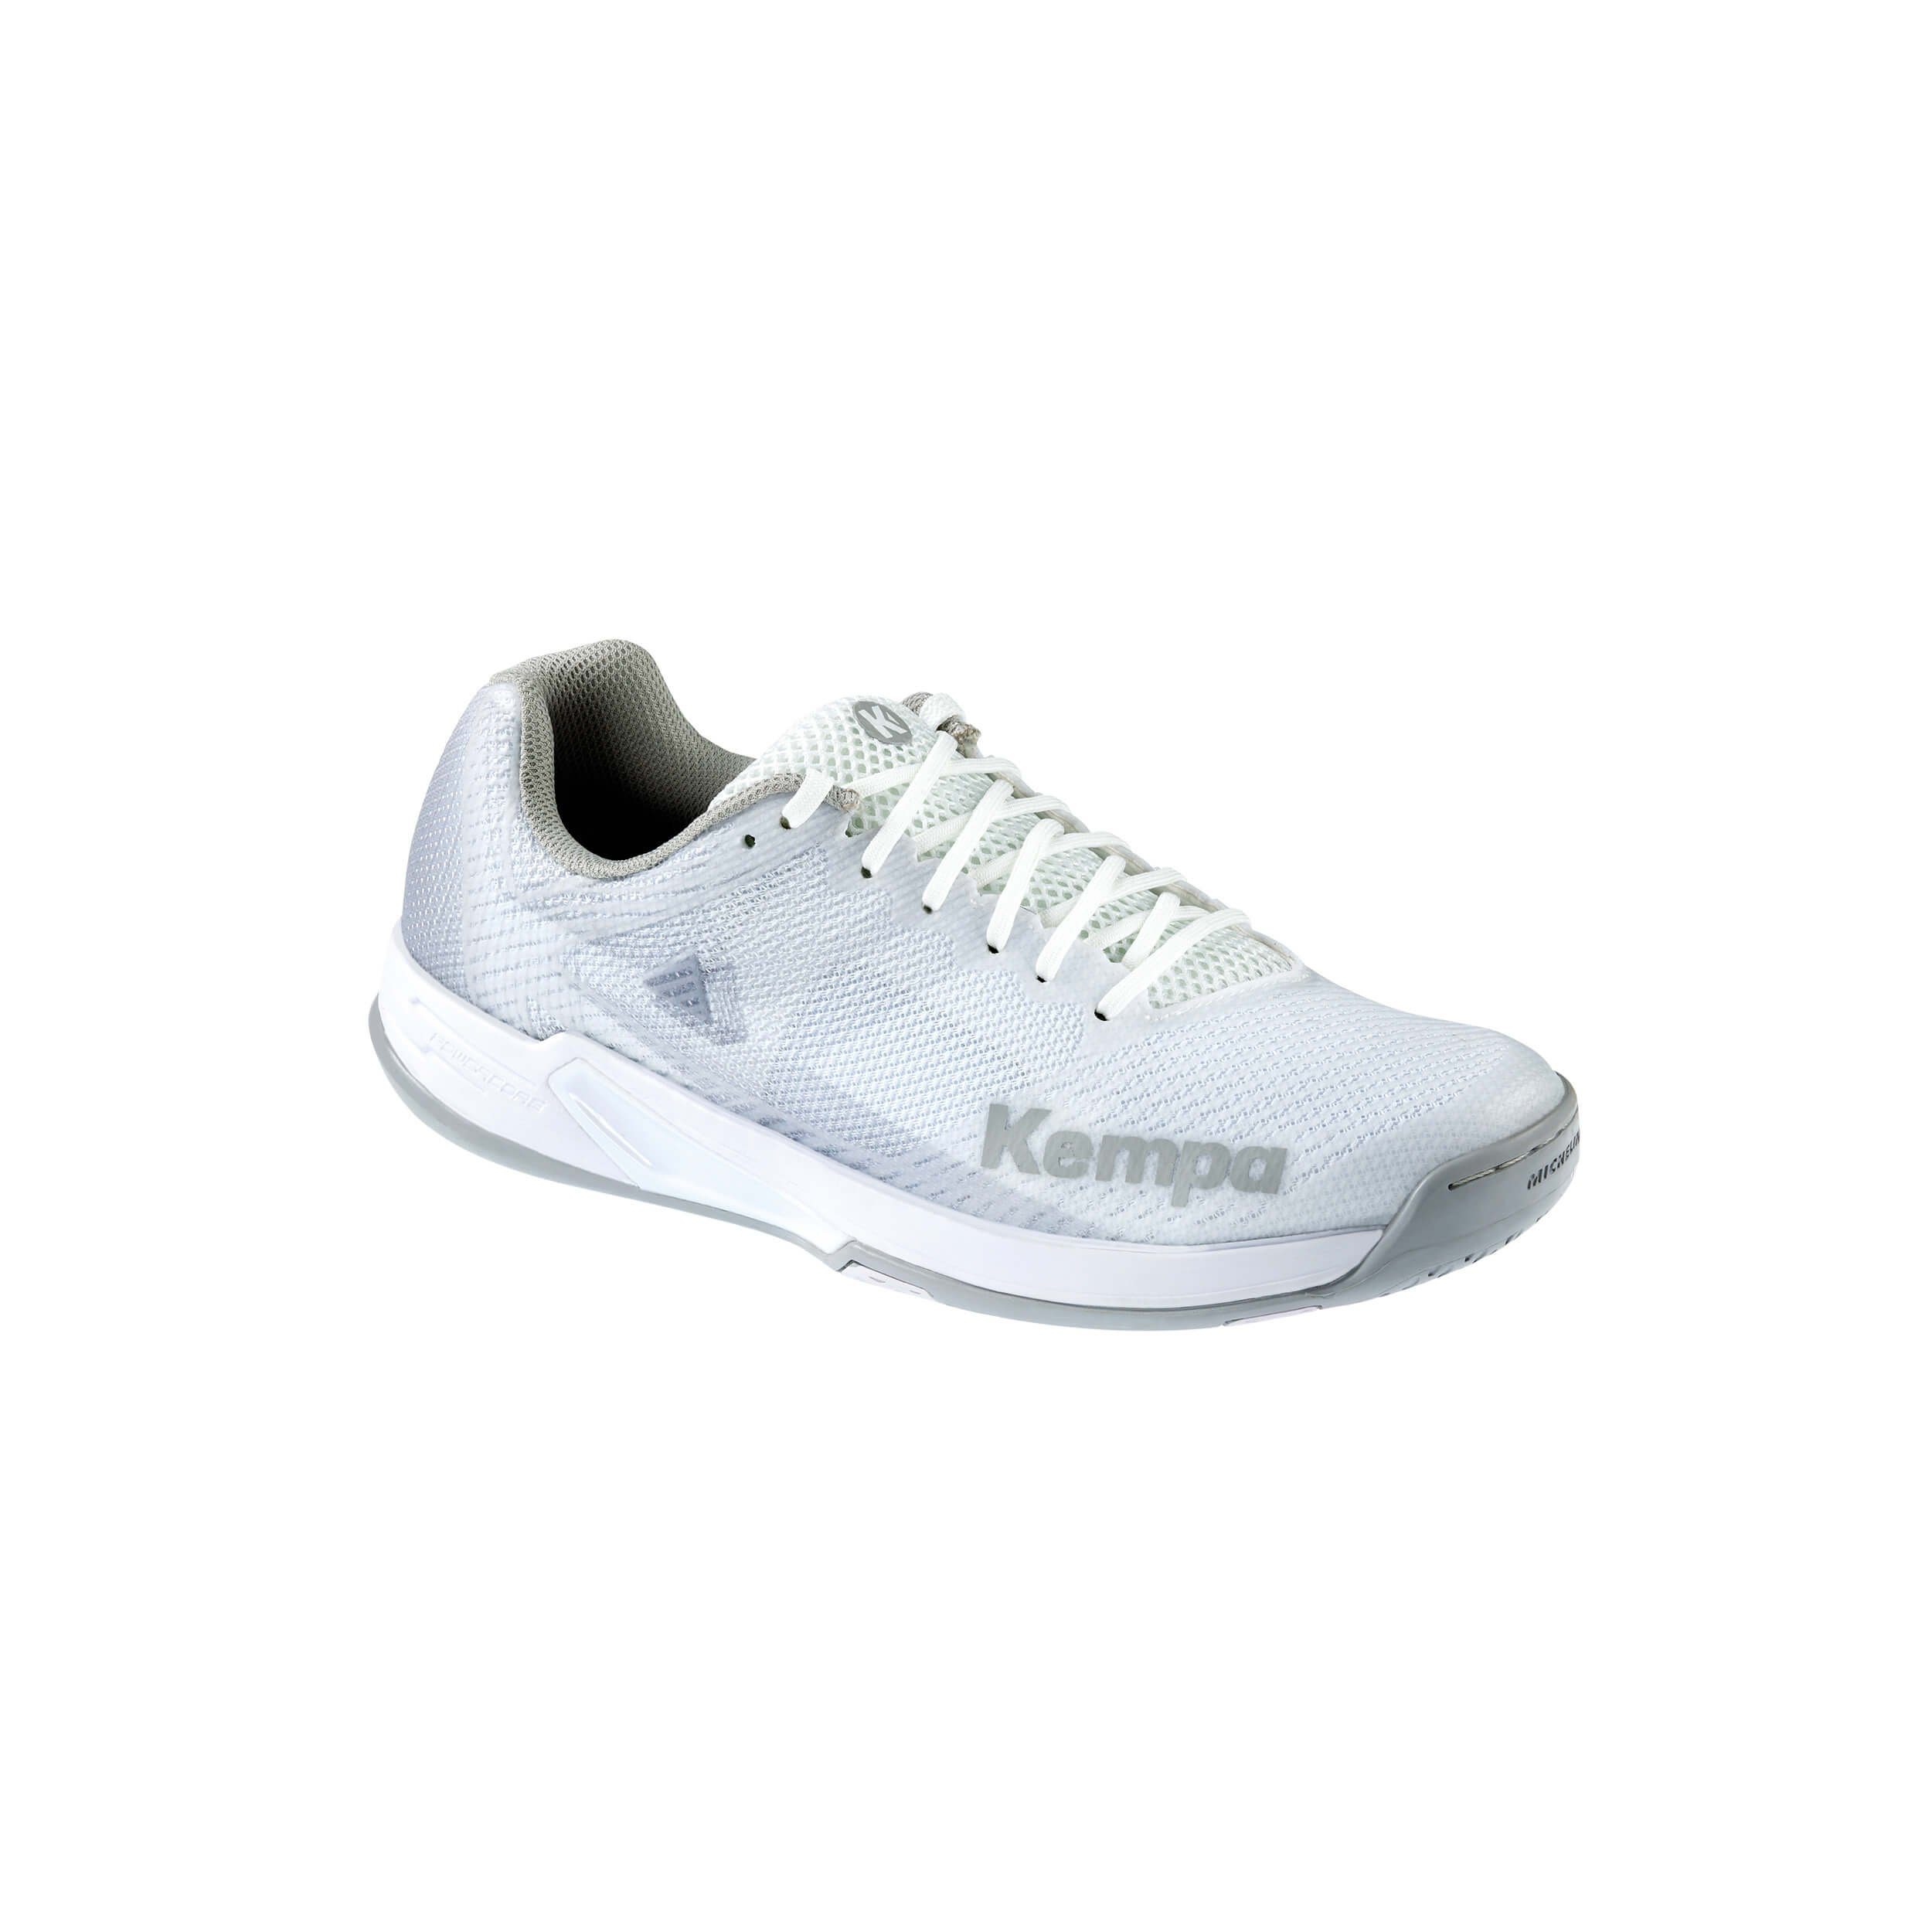 Kempa Kempa Hallen-Sport-Schuhe WING 2.0 WOMEN Hallenschuh 03 weiß/cool grau